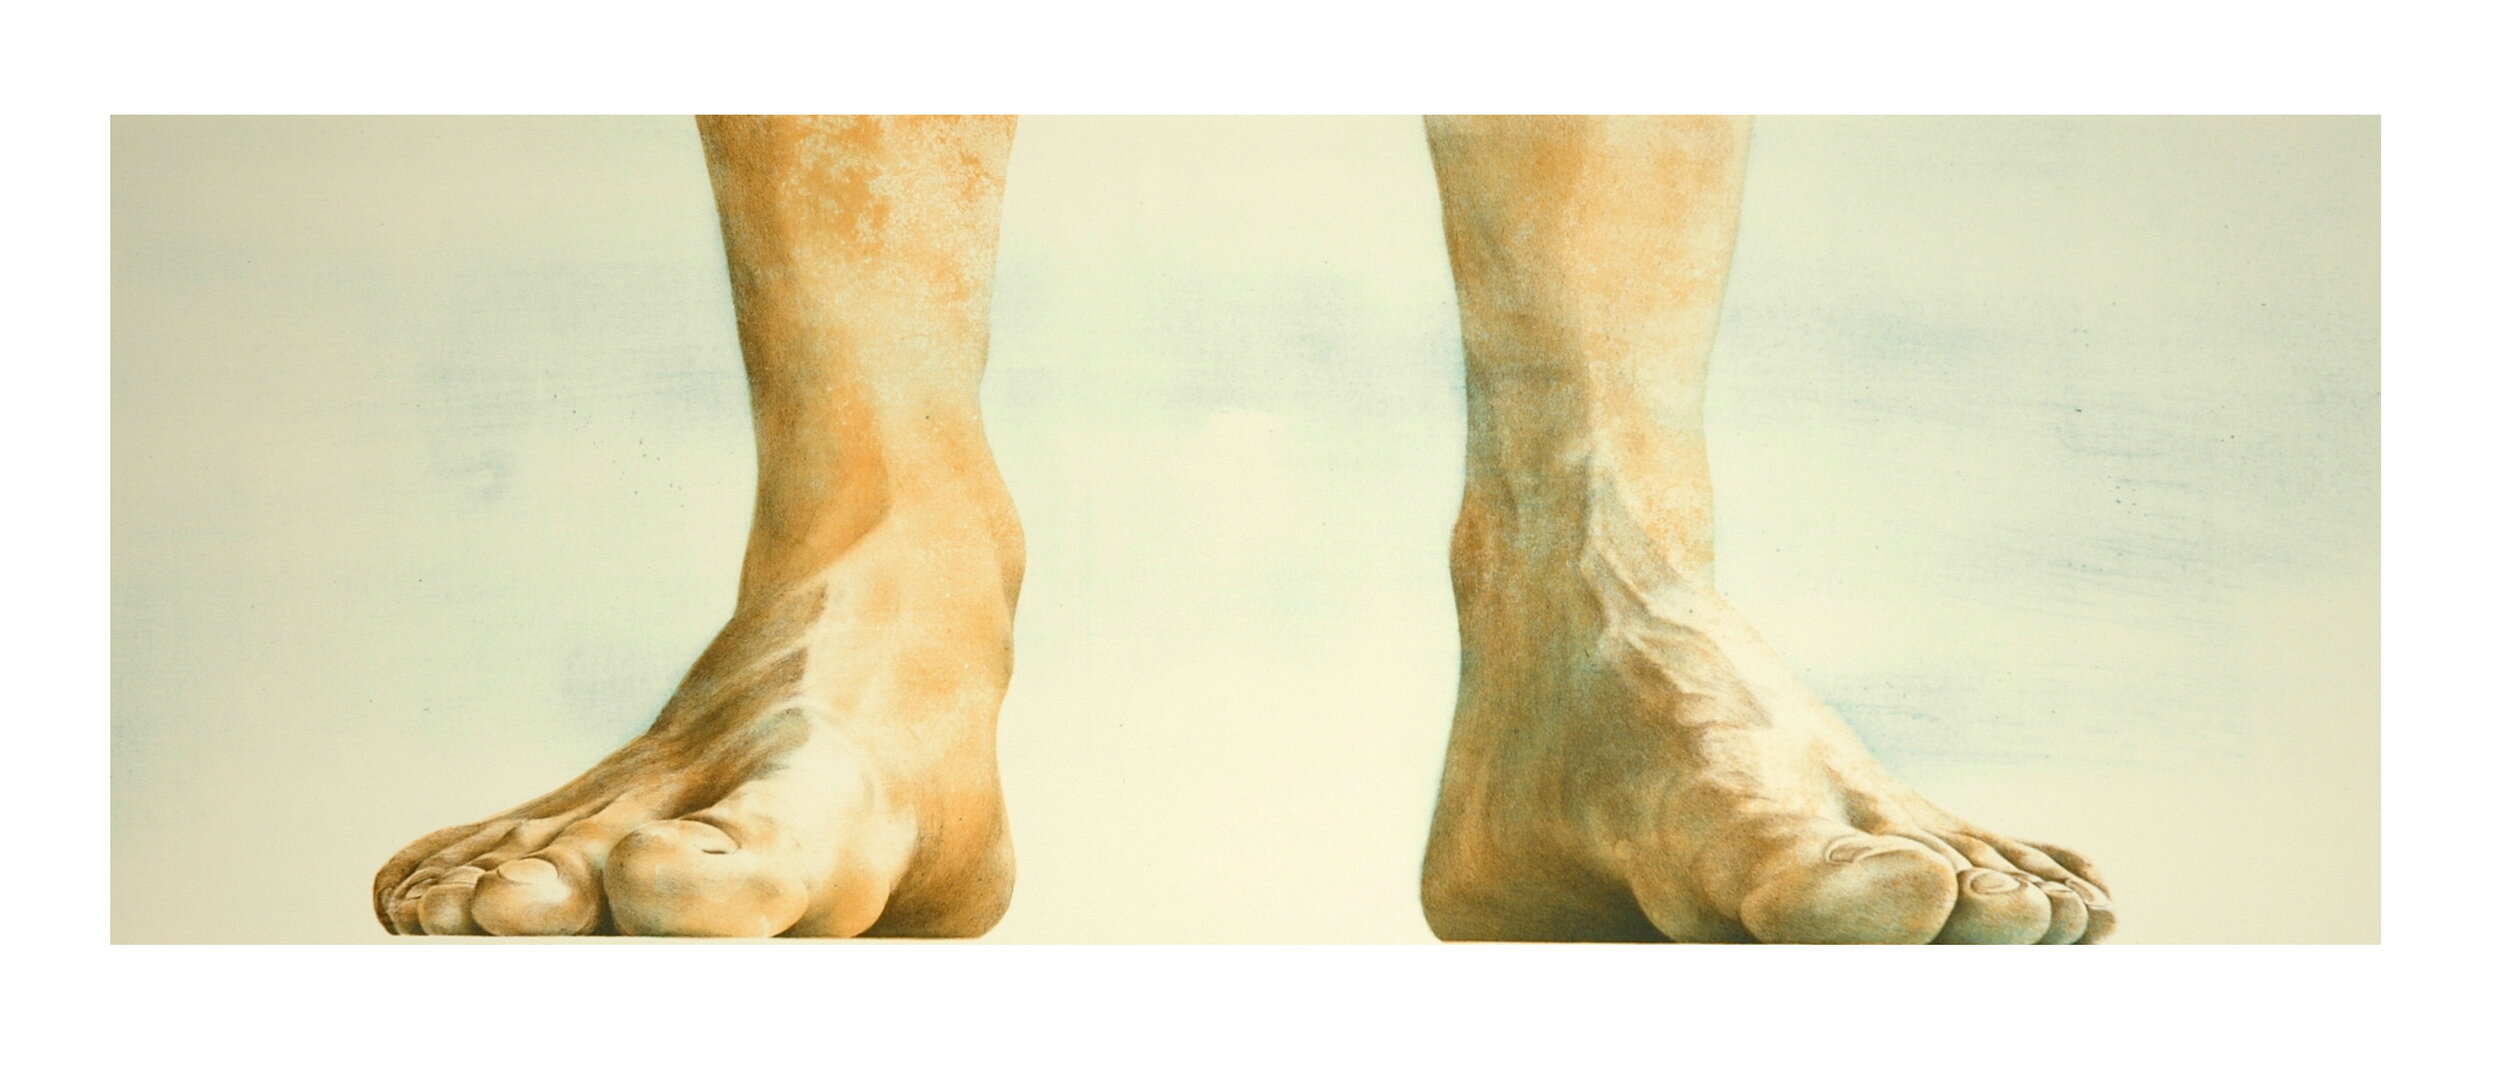  Sinan Demirtaş, feet, lithography, 39x85 cm, ed.10+1AP., 2006 